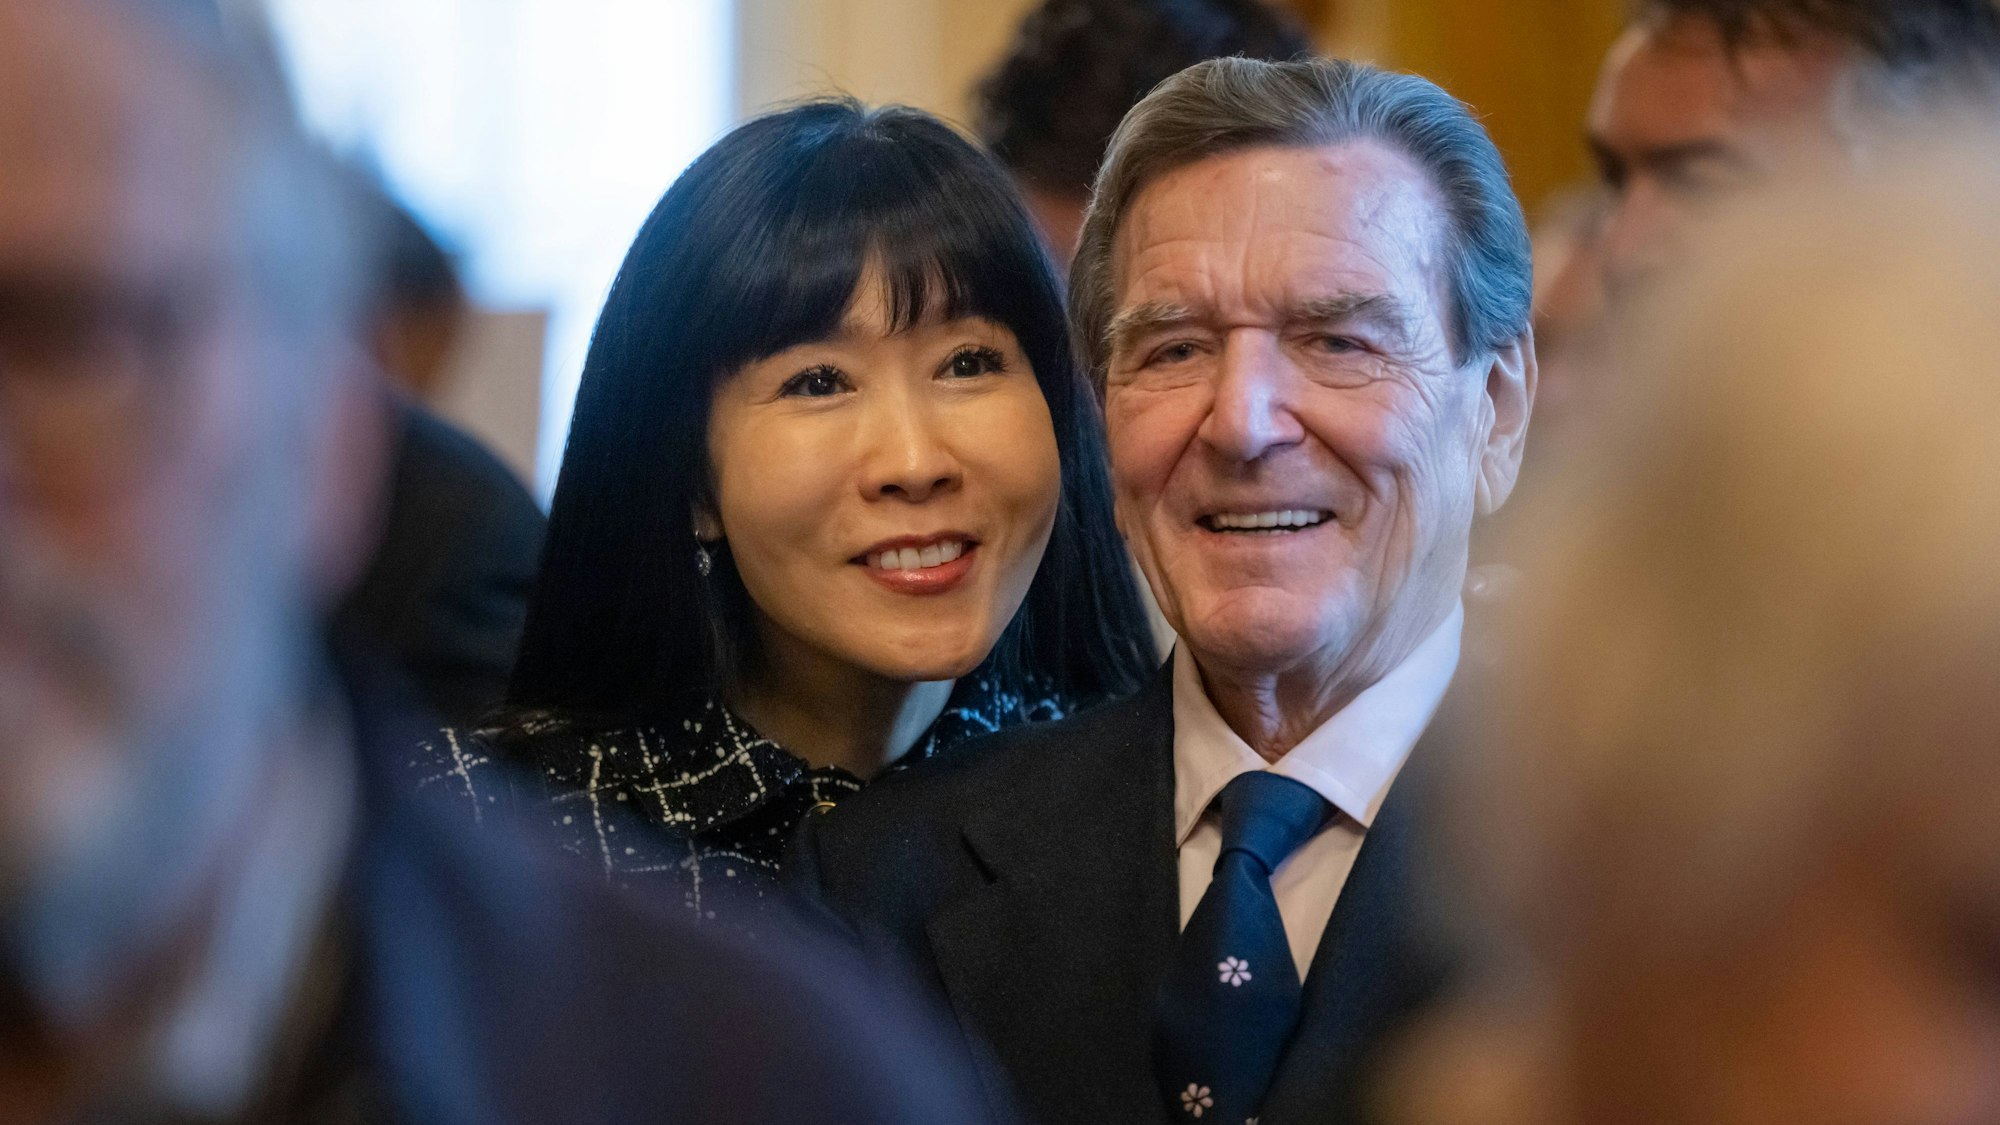 Bundeskanzler a.D. Gerhard Schröder mit seiner Frau Soyeon Schröder-Kim bei einem Besuch im Staatstheater Meiningen.